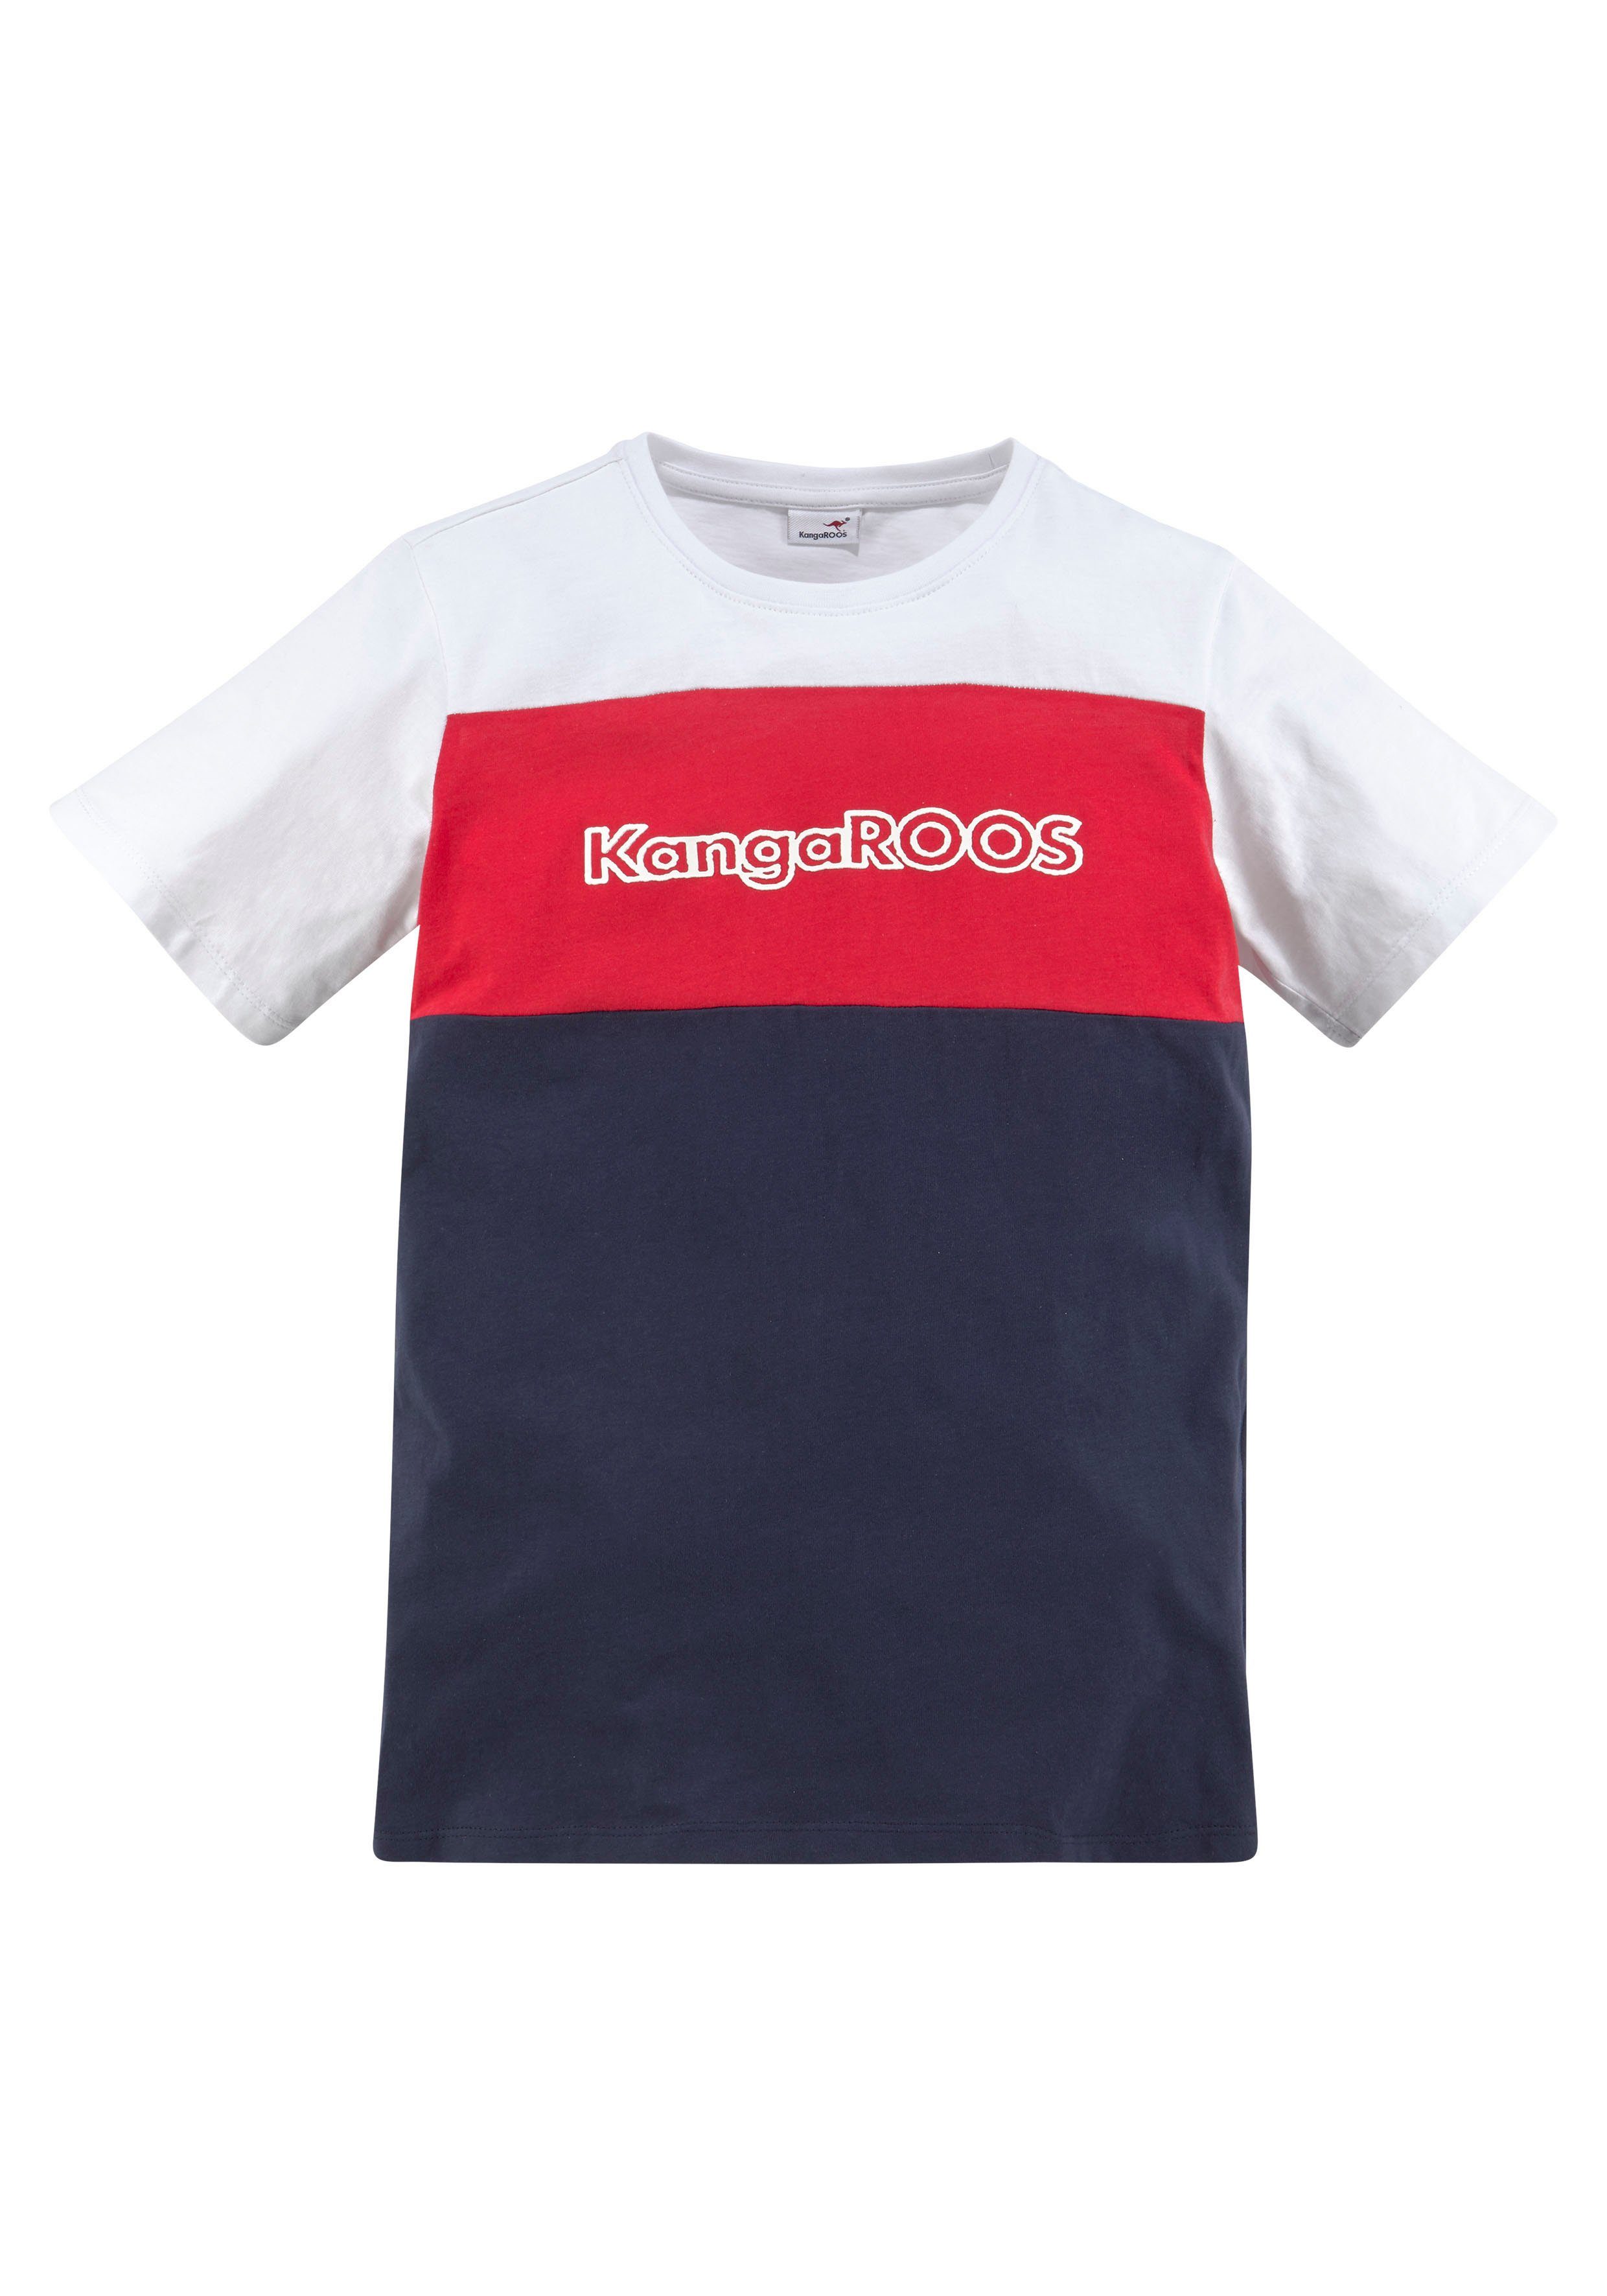 T-Shirt in KangaROOS Colorblockdesign